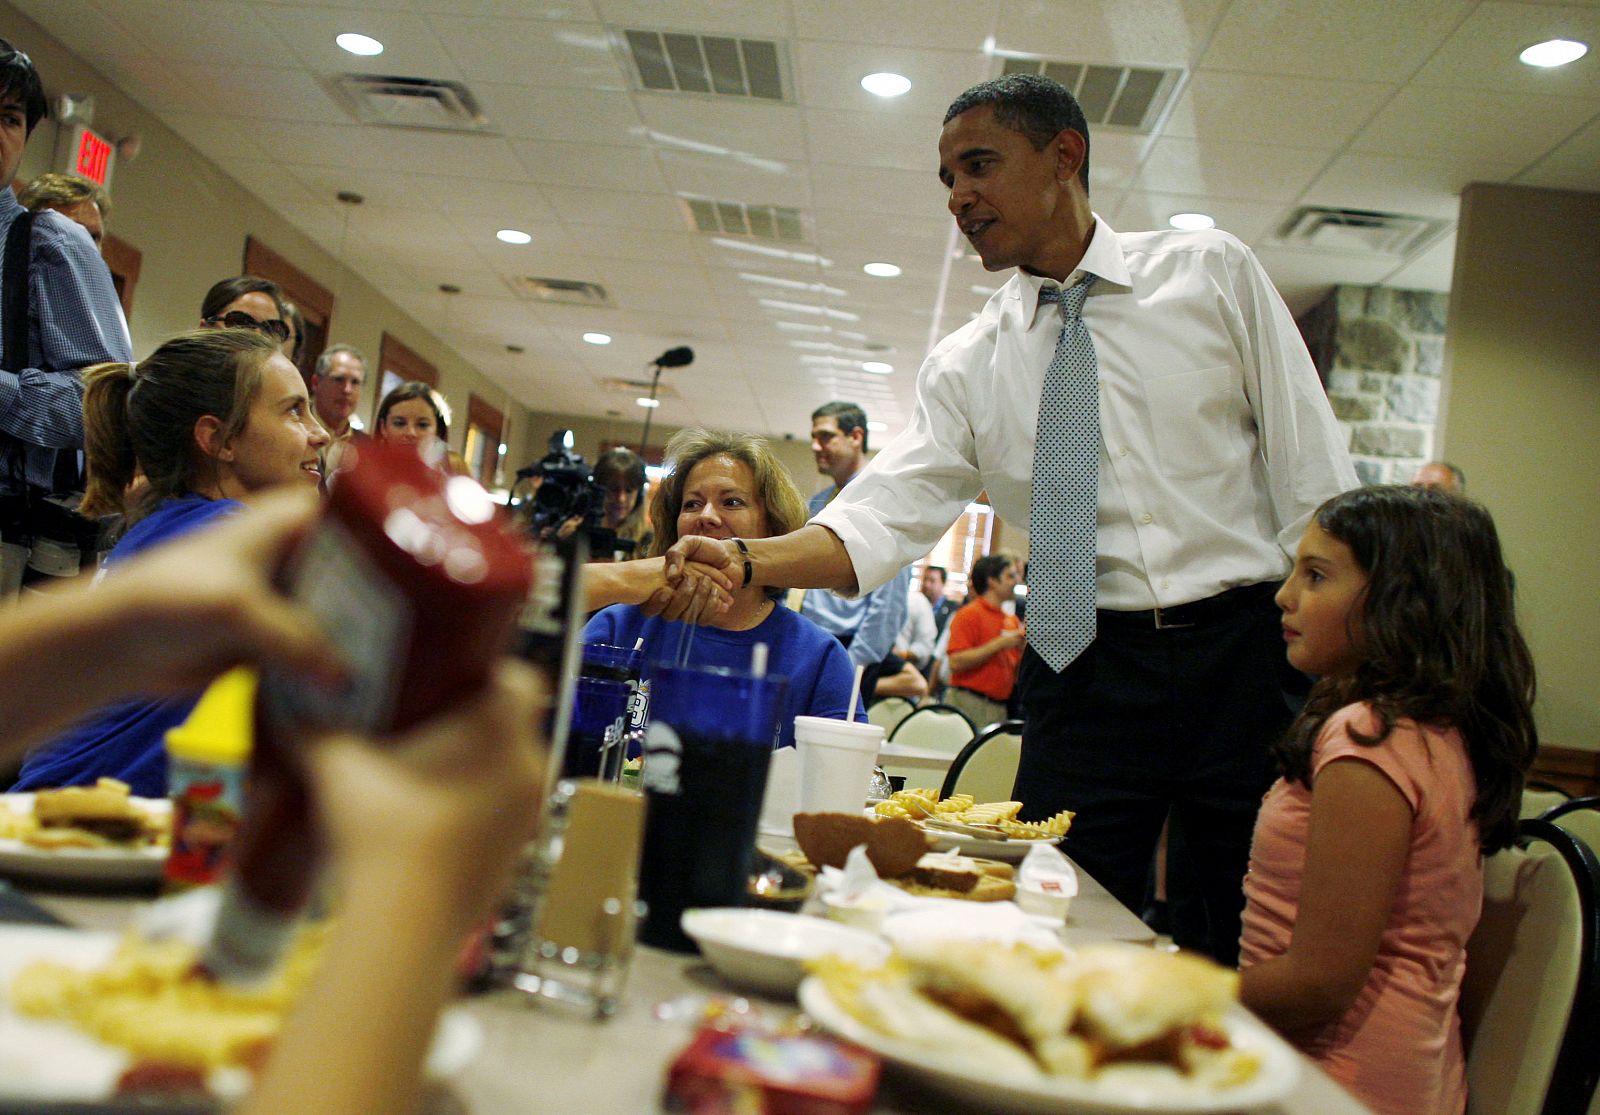 Obama saluda a los clientes de un restaurante en Ohio, estado industrial donde va a pasar esta semana preparando el último debate.